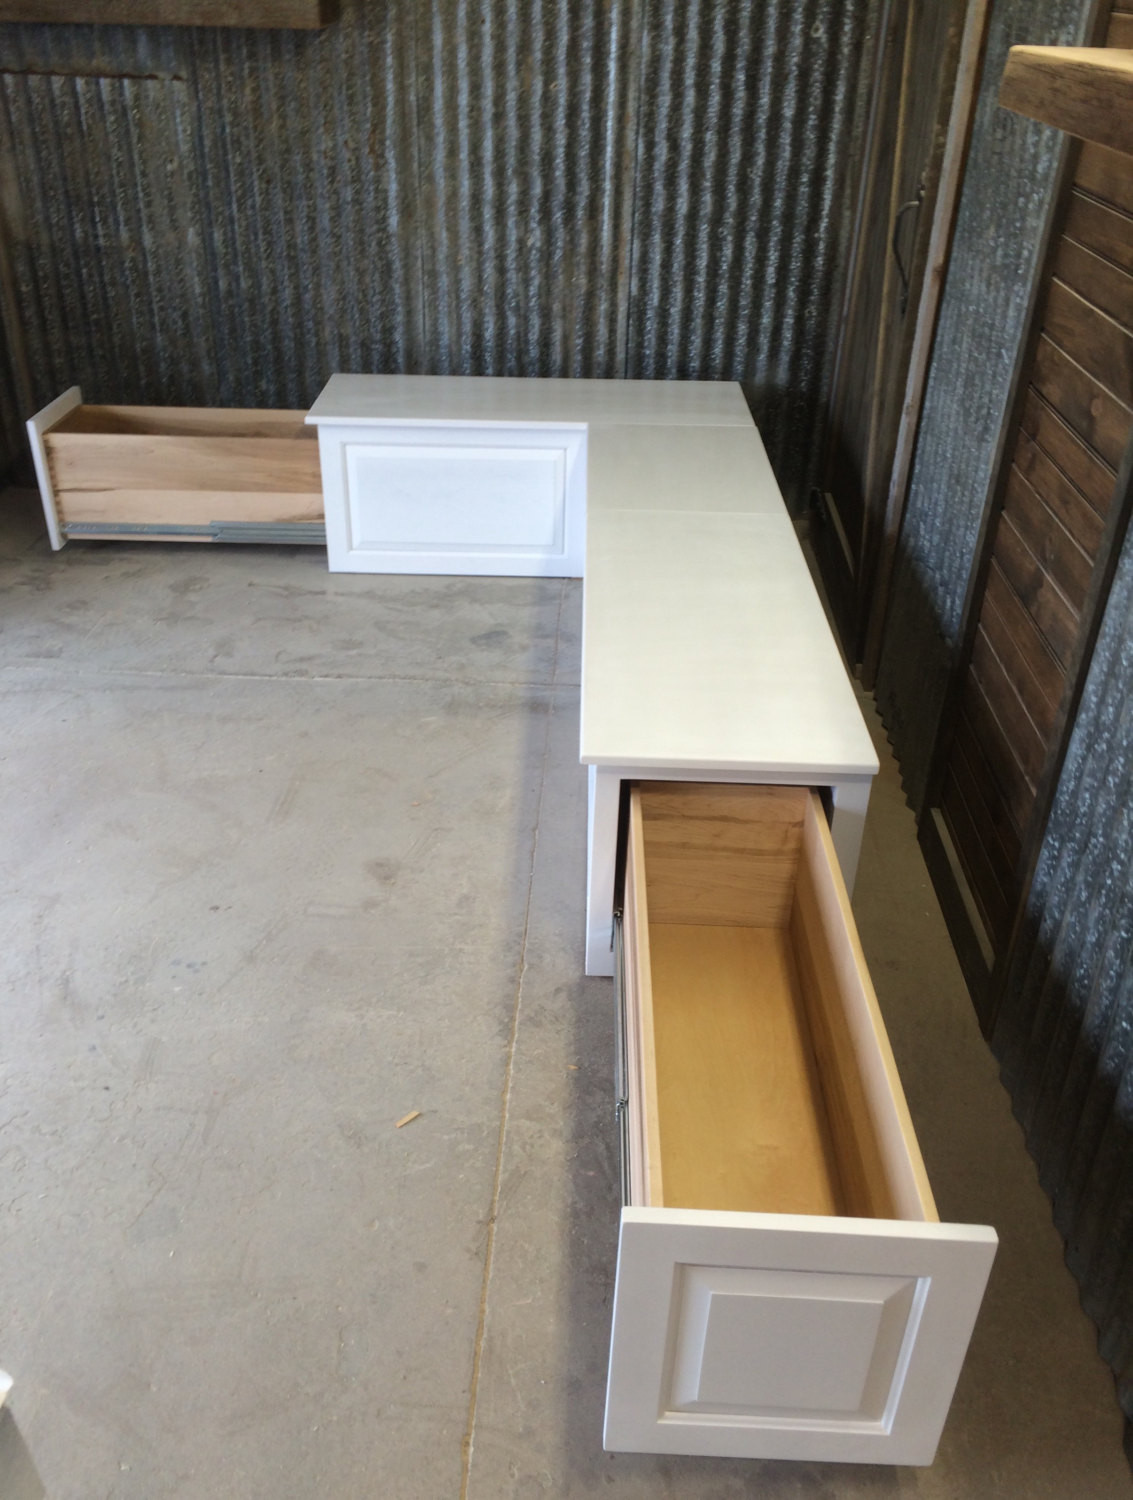 Kitchen Corner Bench With Storage
 Banquette Corner Bench Seat with Storage Drawers